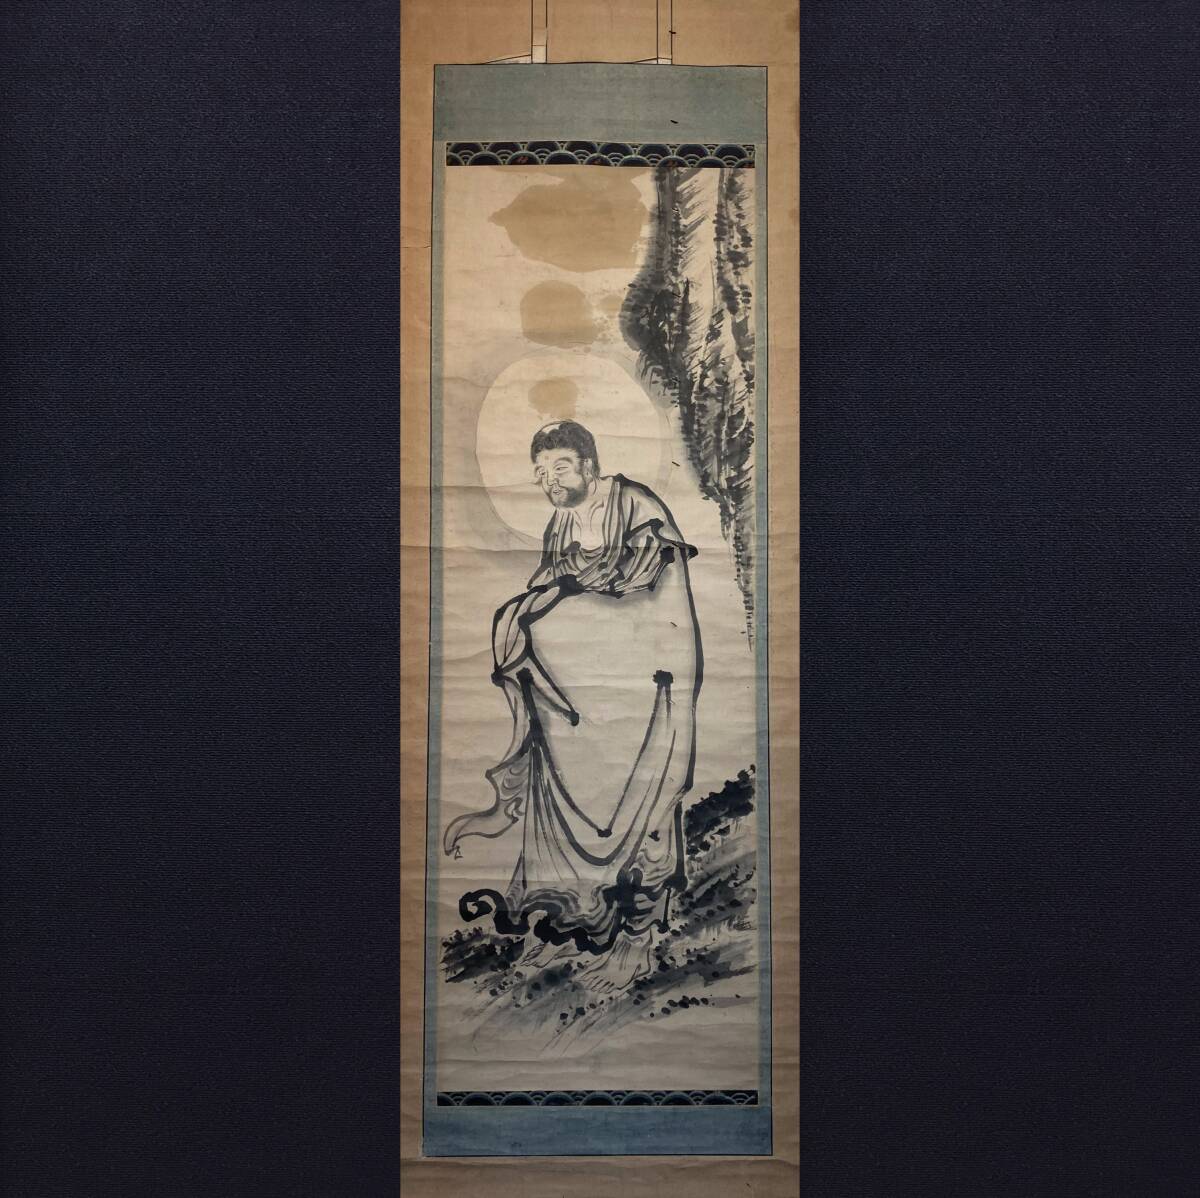 [Art] Artiste inconnu (Shakyamuni le Bienheureux) Peinture de Bouddha Art bouddhiste Art antique Livre de poche manuscrit Rouleau suspendu, peinture, Peinture japonaise, personne, Bodhisattva